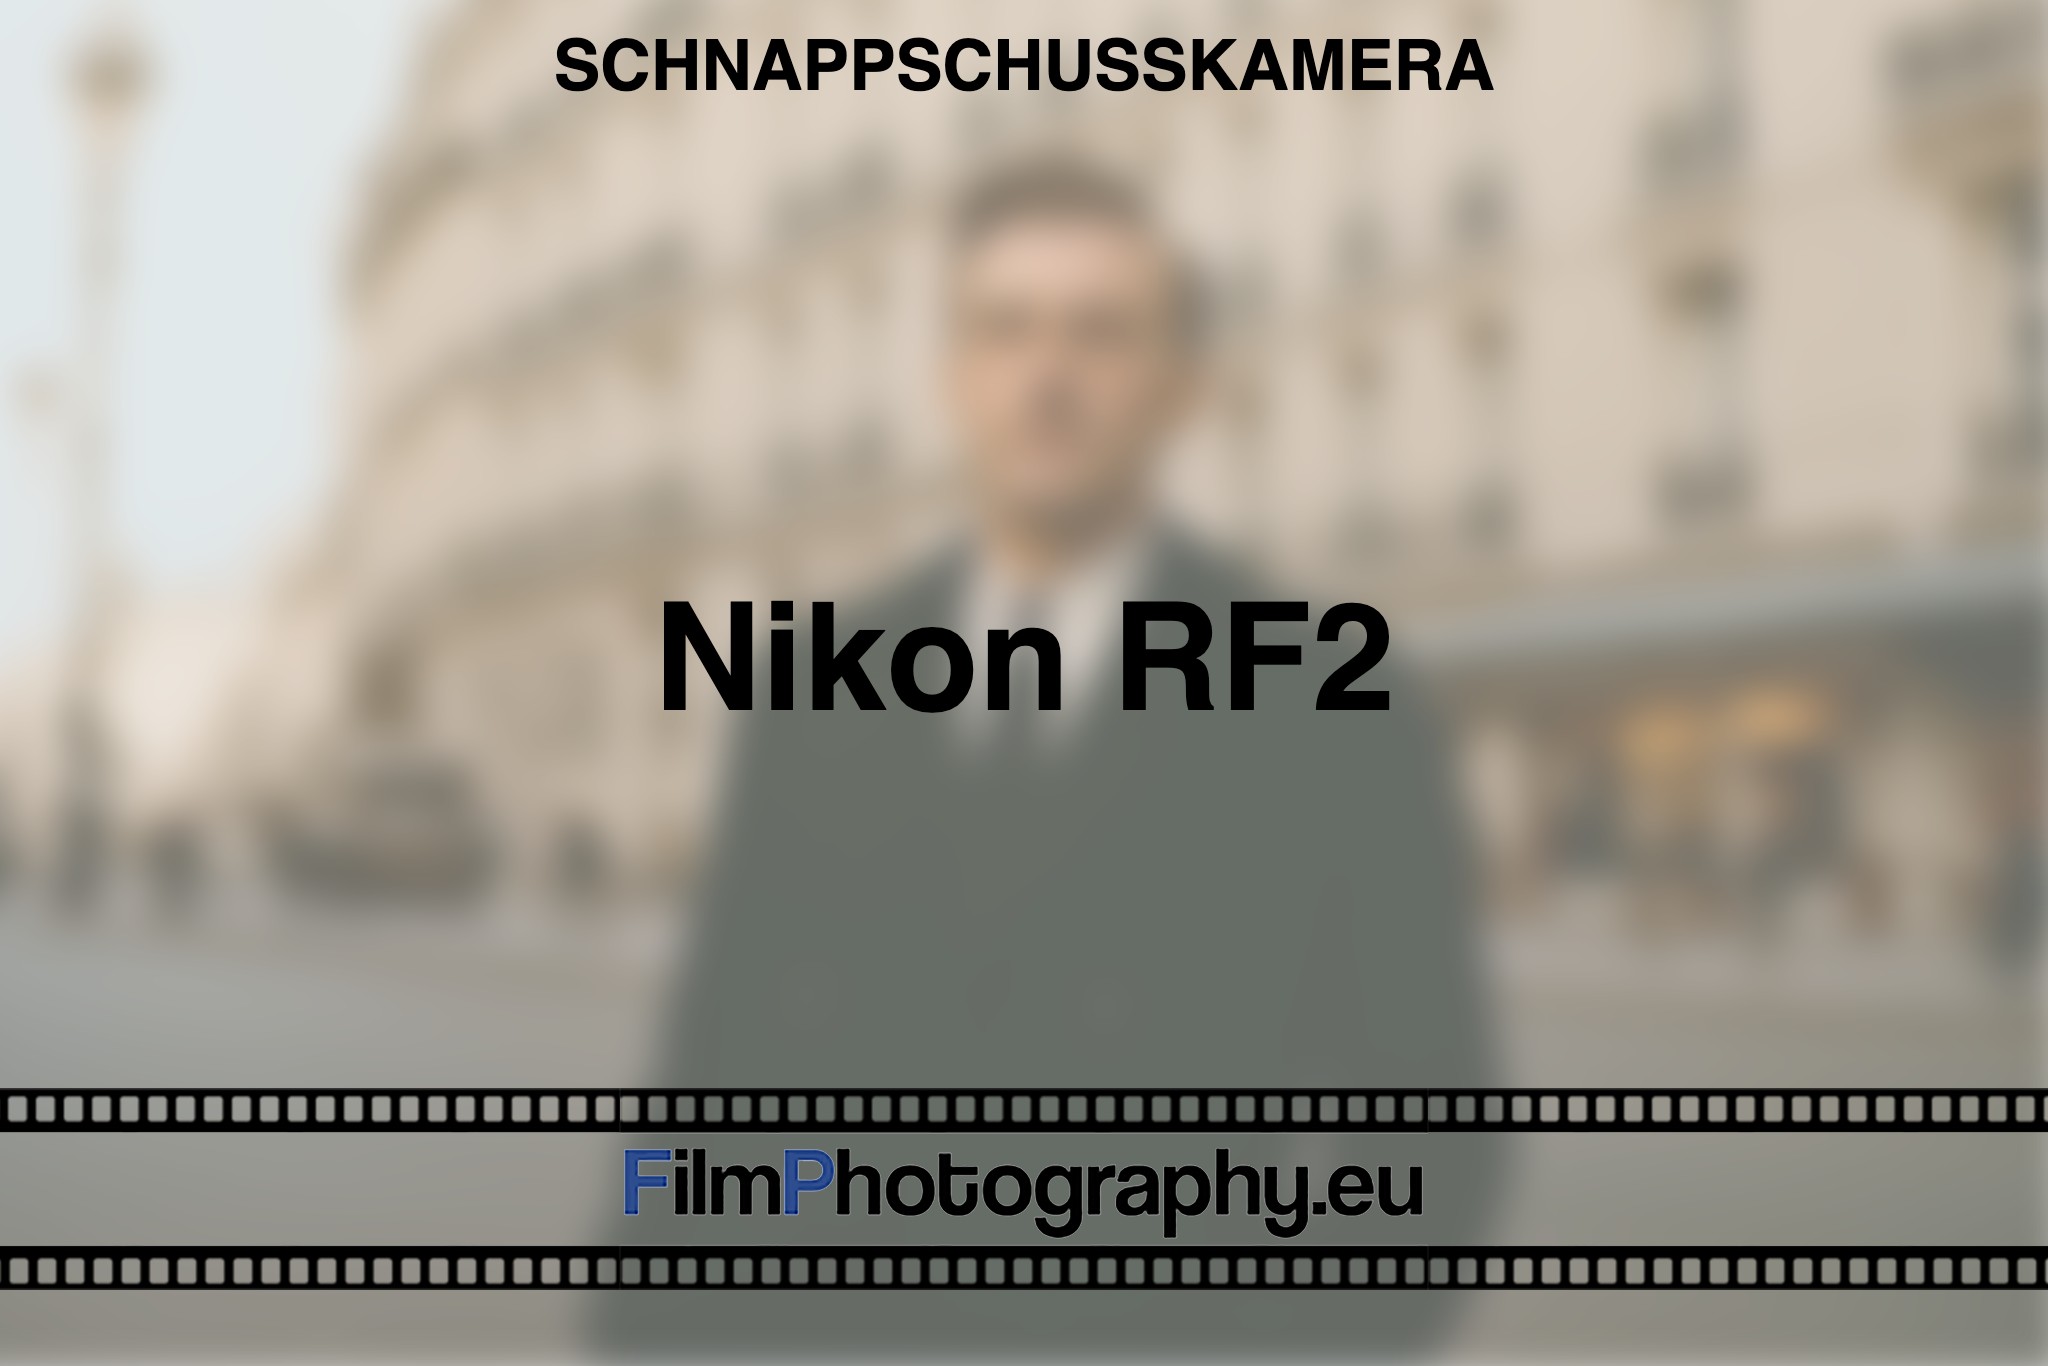 nikon-rf2-schnappschusskamera-bnv